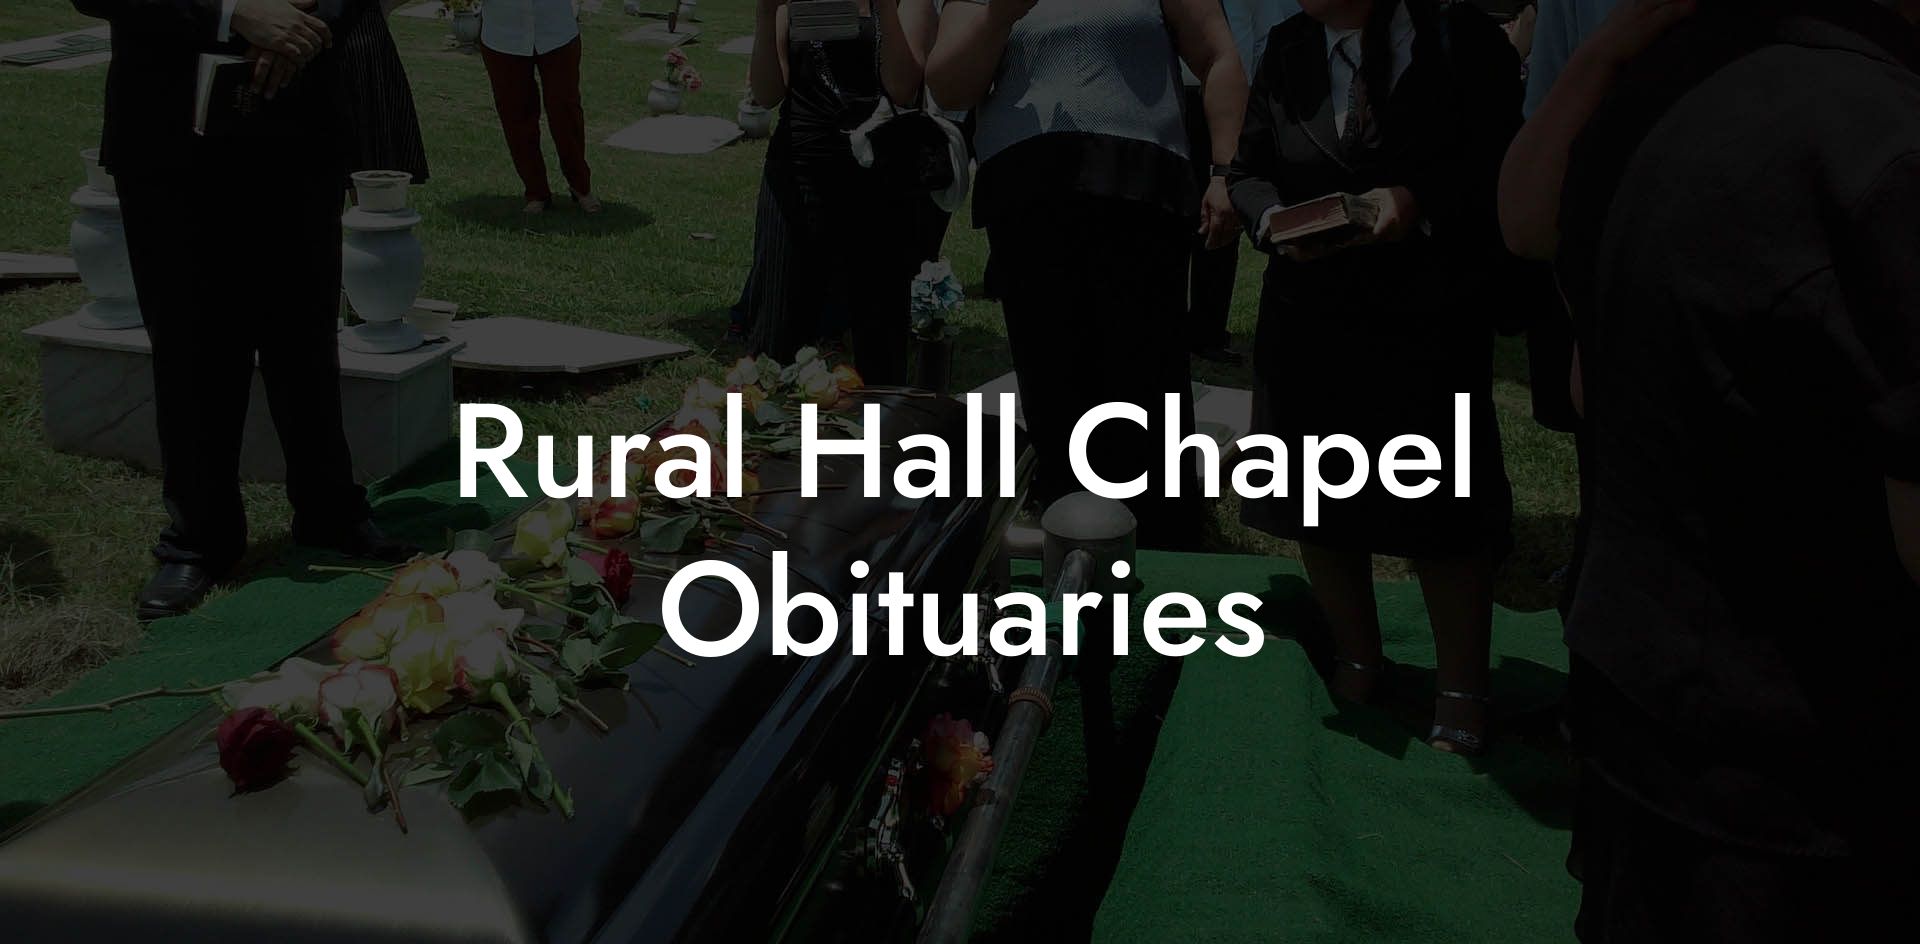 Rural Hall Chapel Obituaries